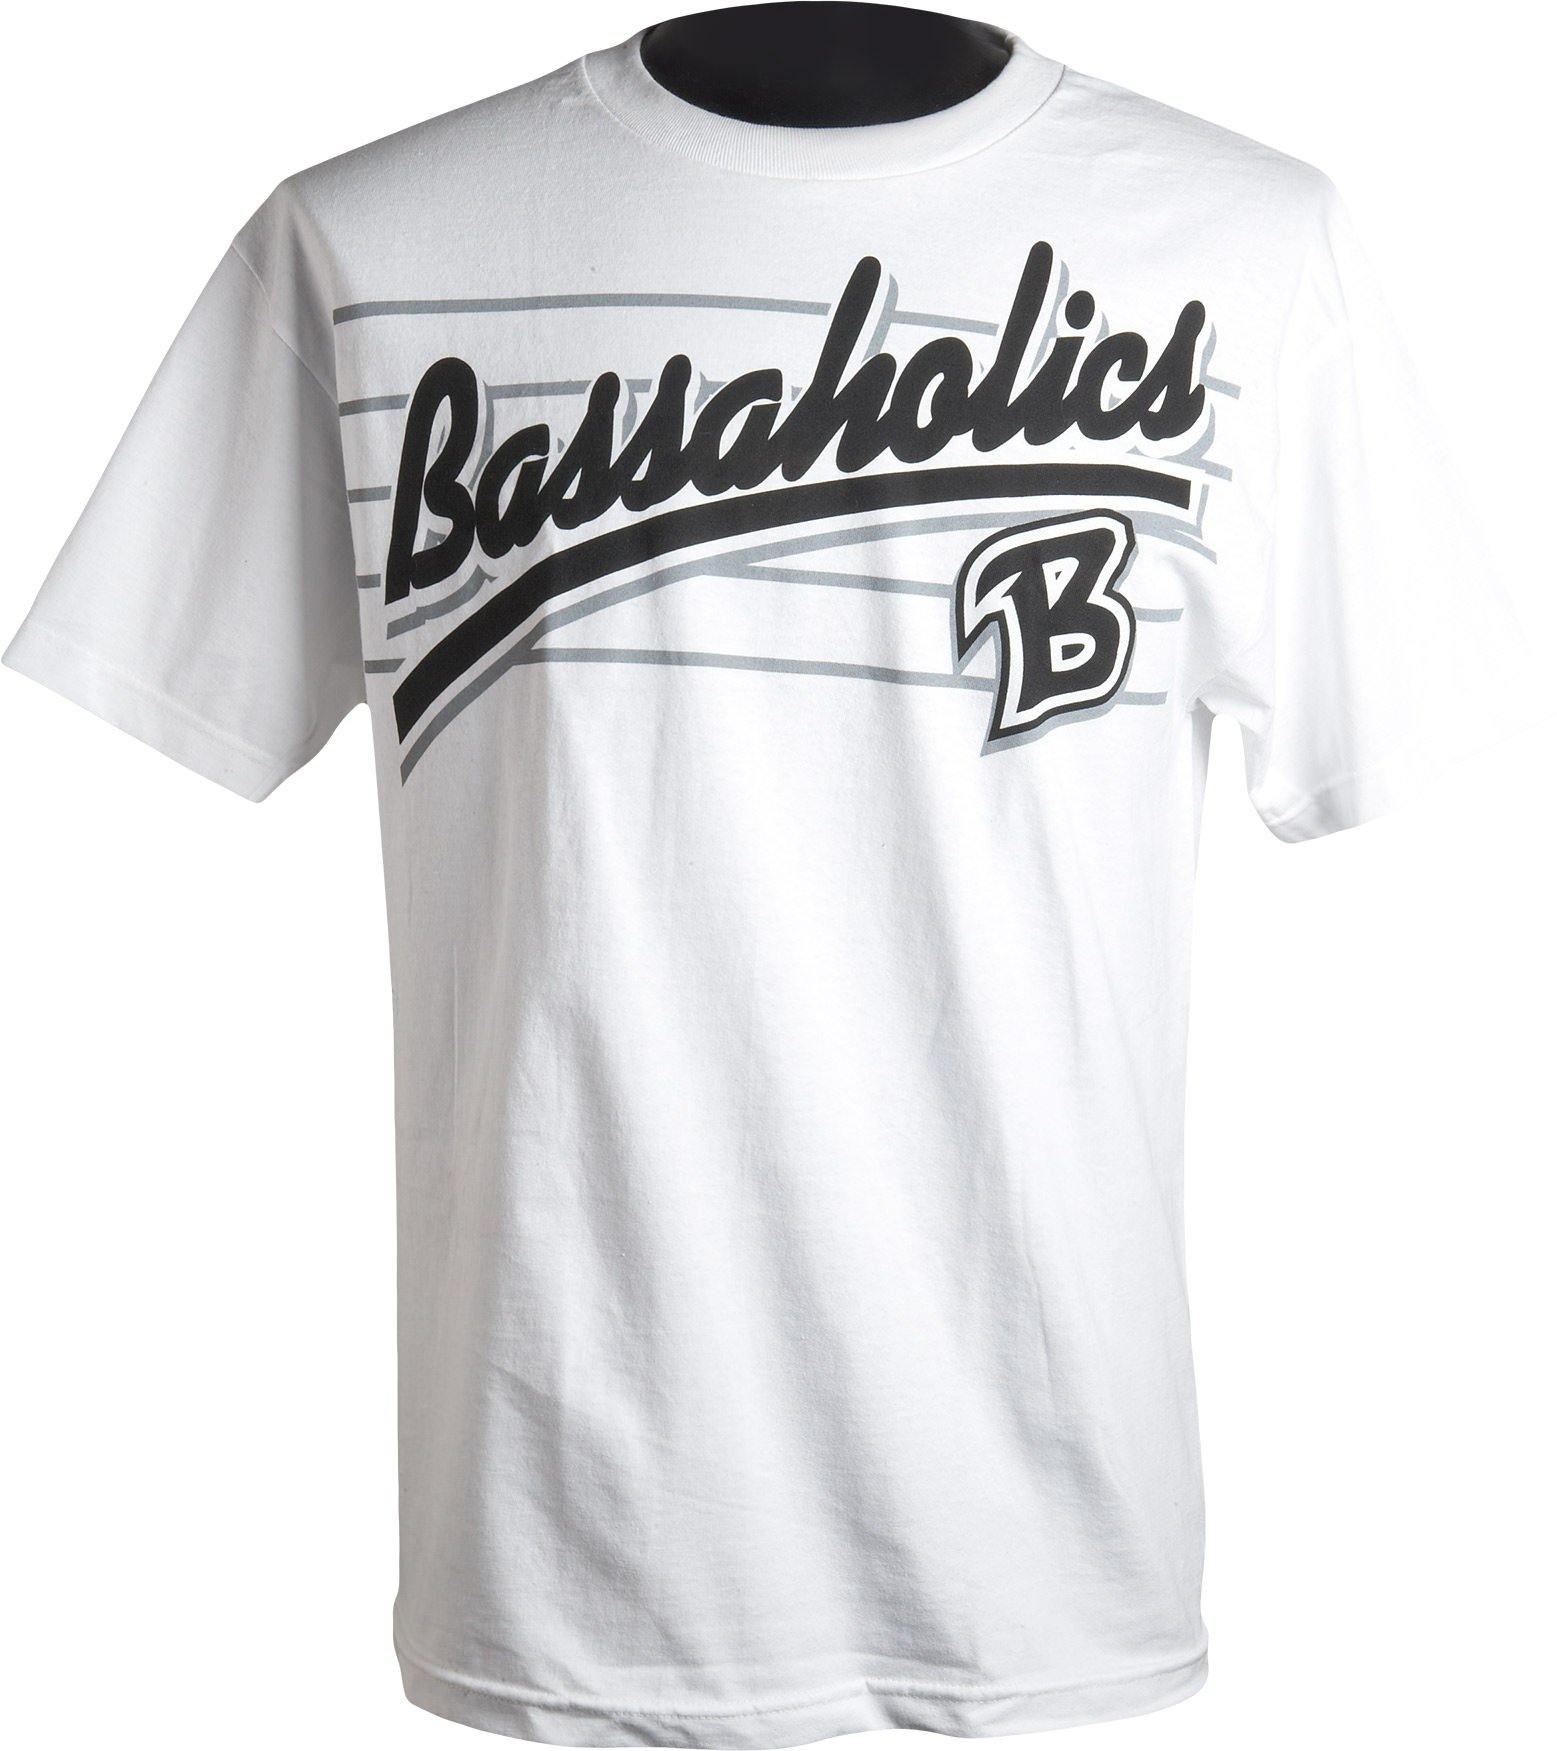 http://www.bassaholics.com/cdn/shop/products/metal-mens-bass-fishing-t-shirt-white.jpg?v=1653156789